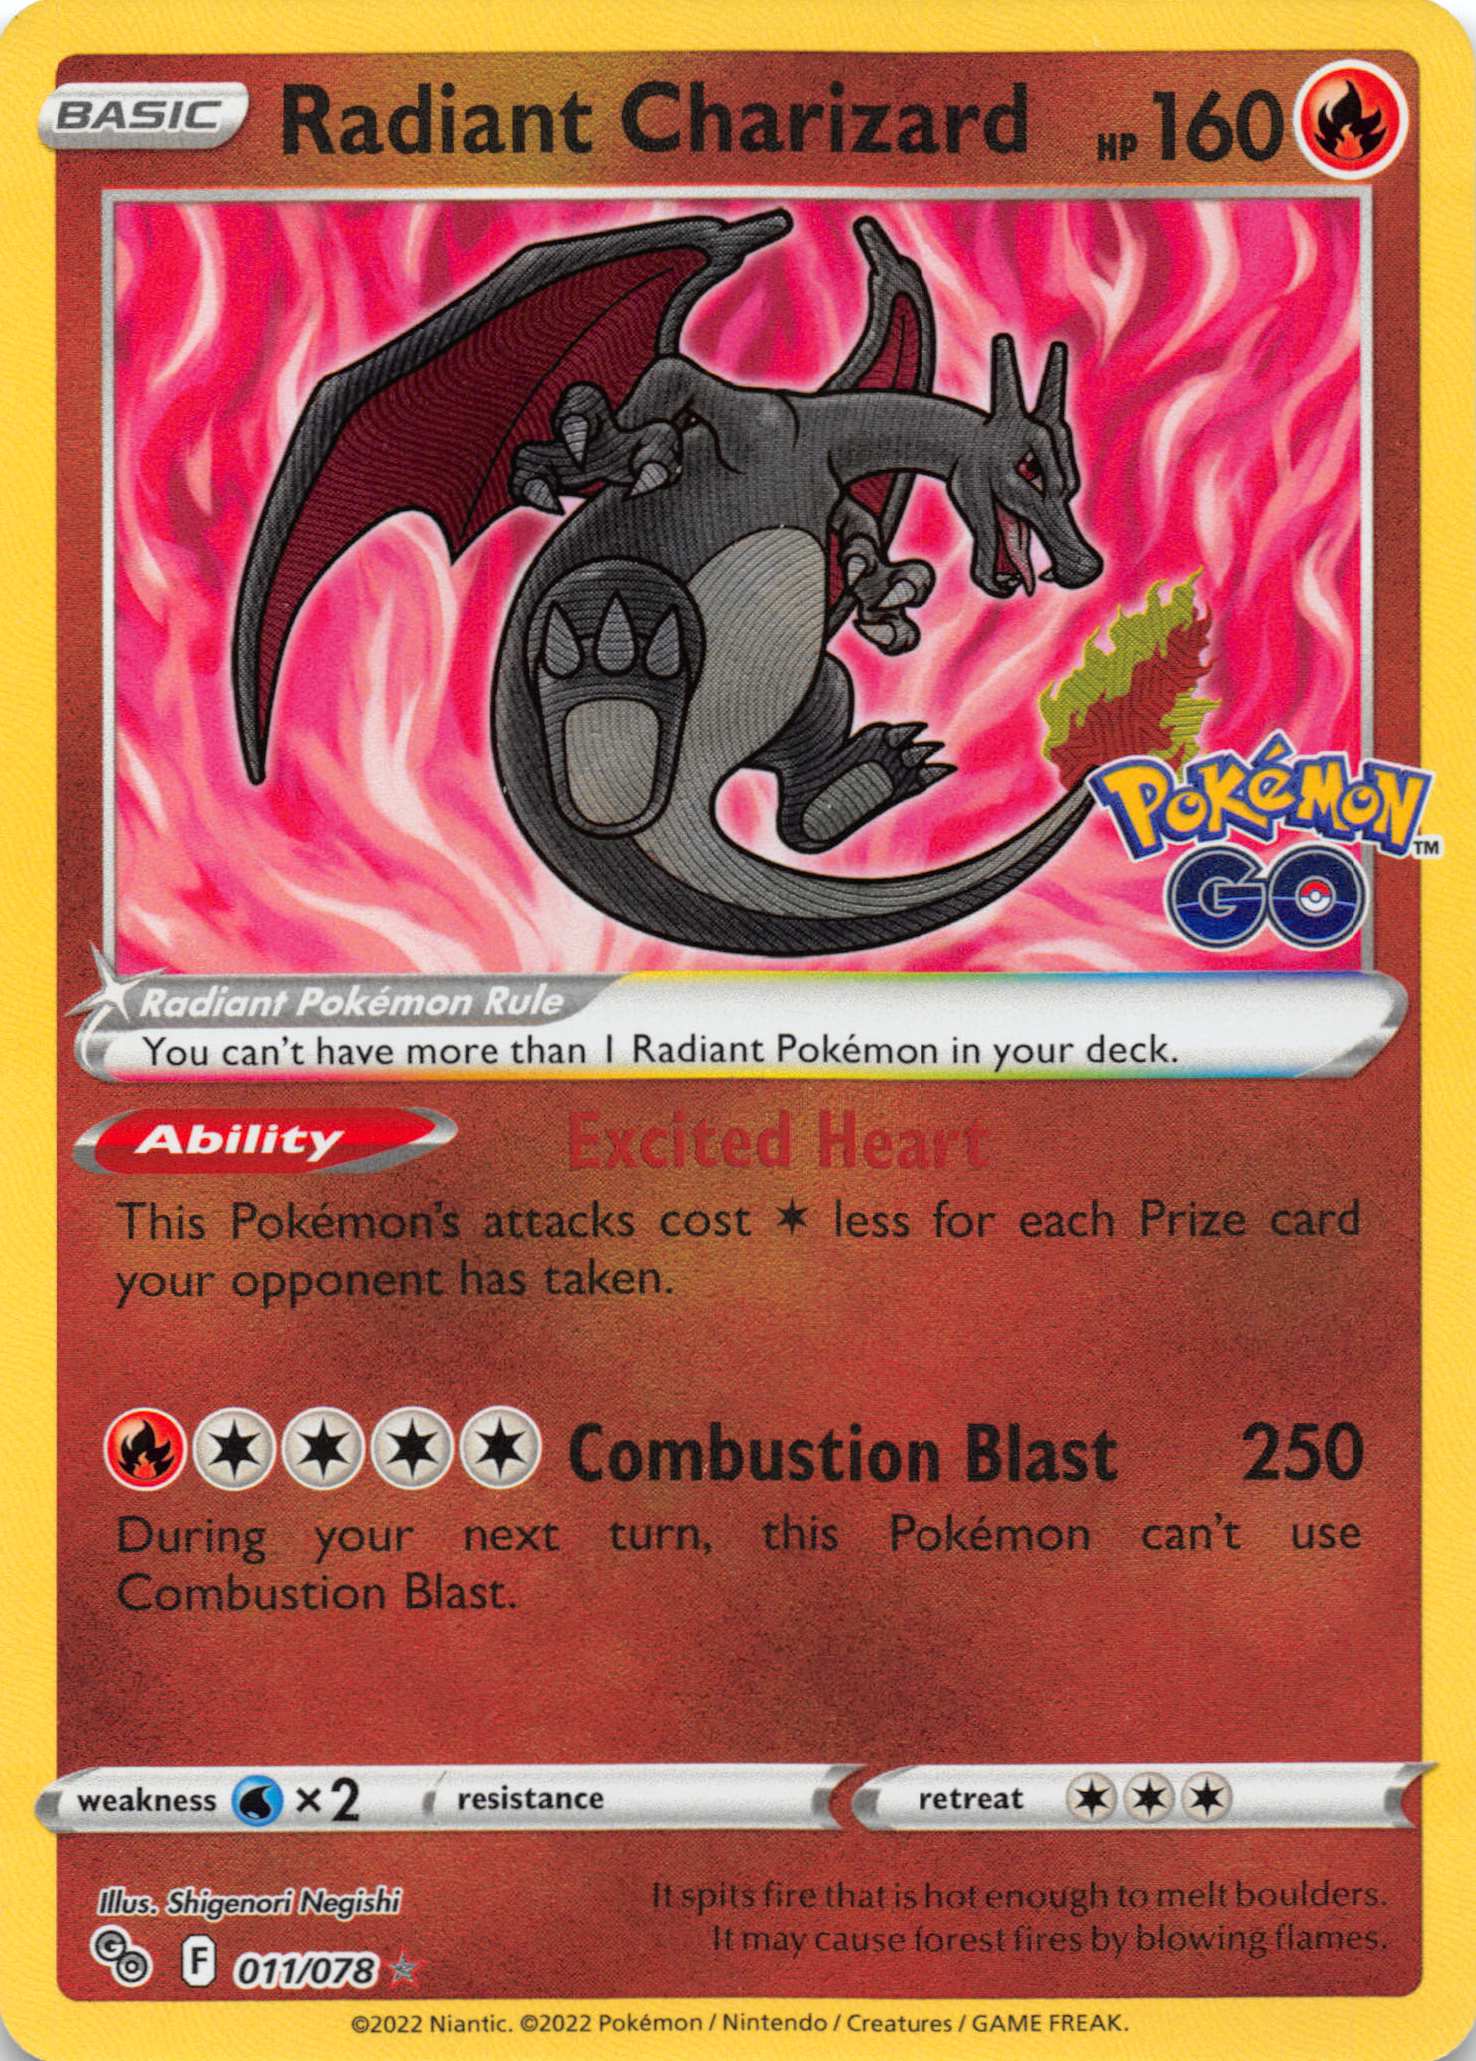 Radiant Charizard (011/078) [Pokémon GO]